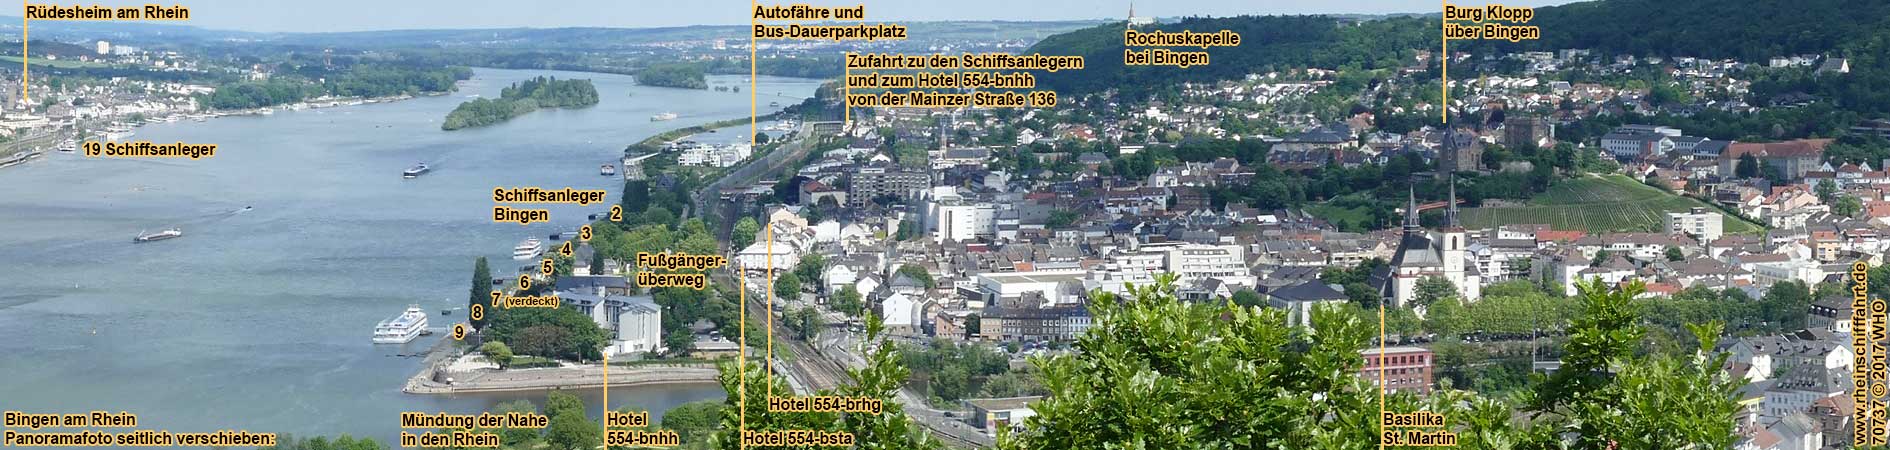 Bingen am Rhein. Panoramafoto mit Schiffsanlegern.